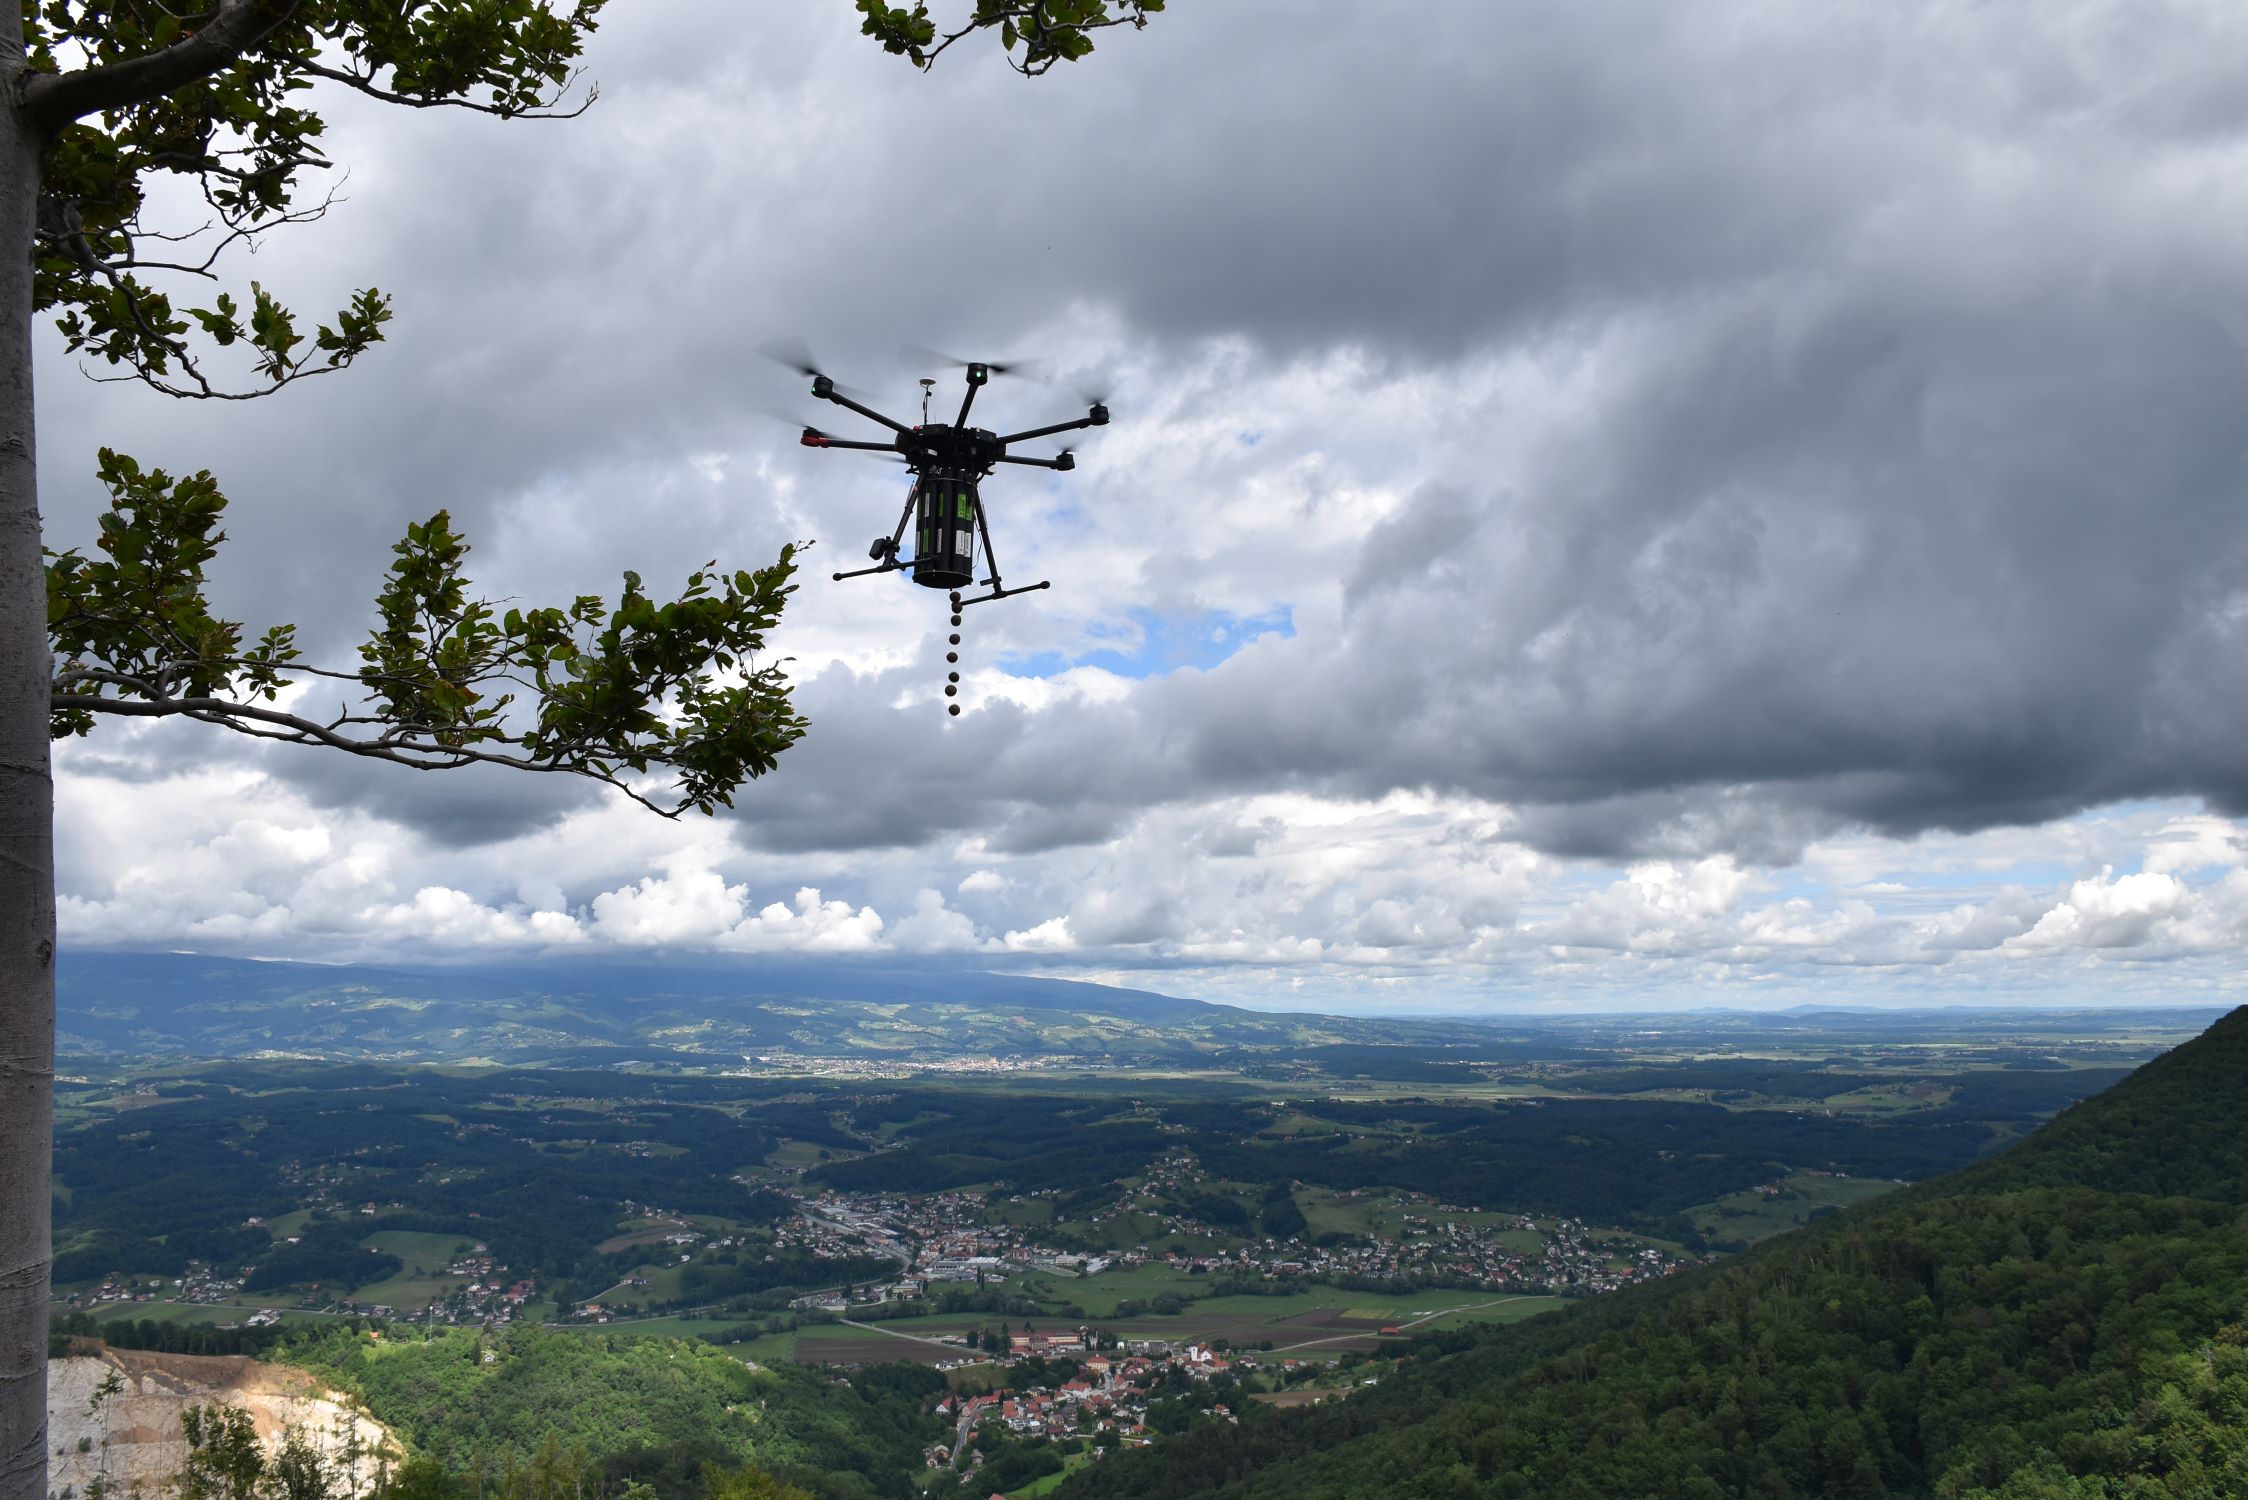 Setev dreves iz neba: Ste že videli, kako droni pomagajo pri obnovi gozdov?